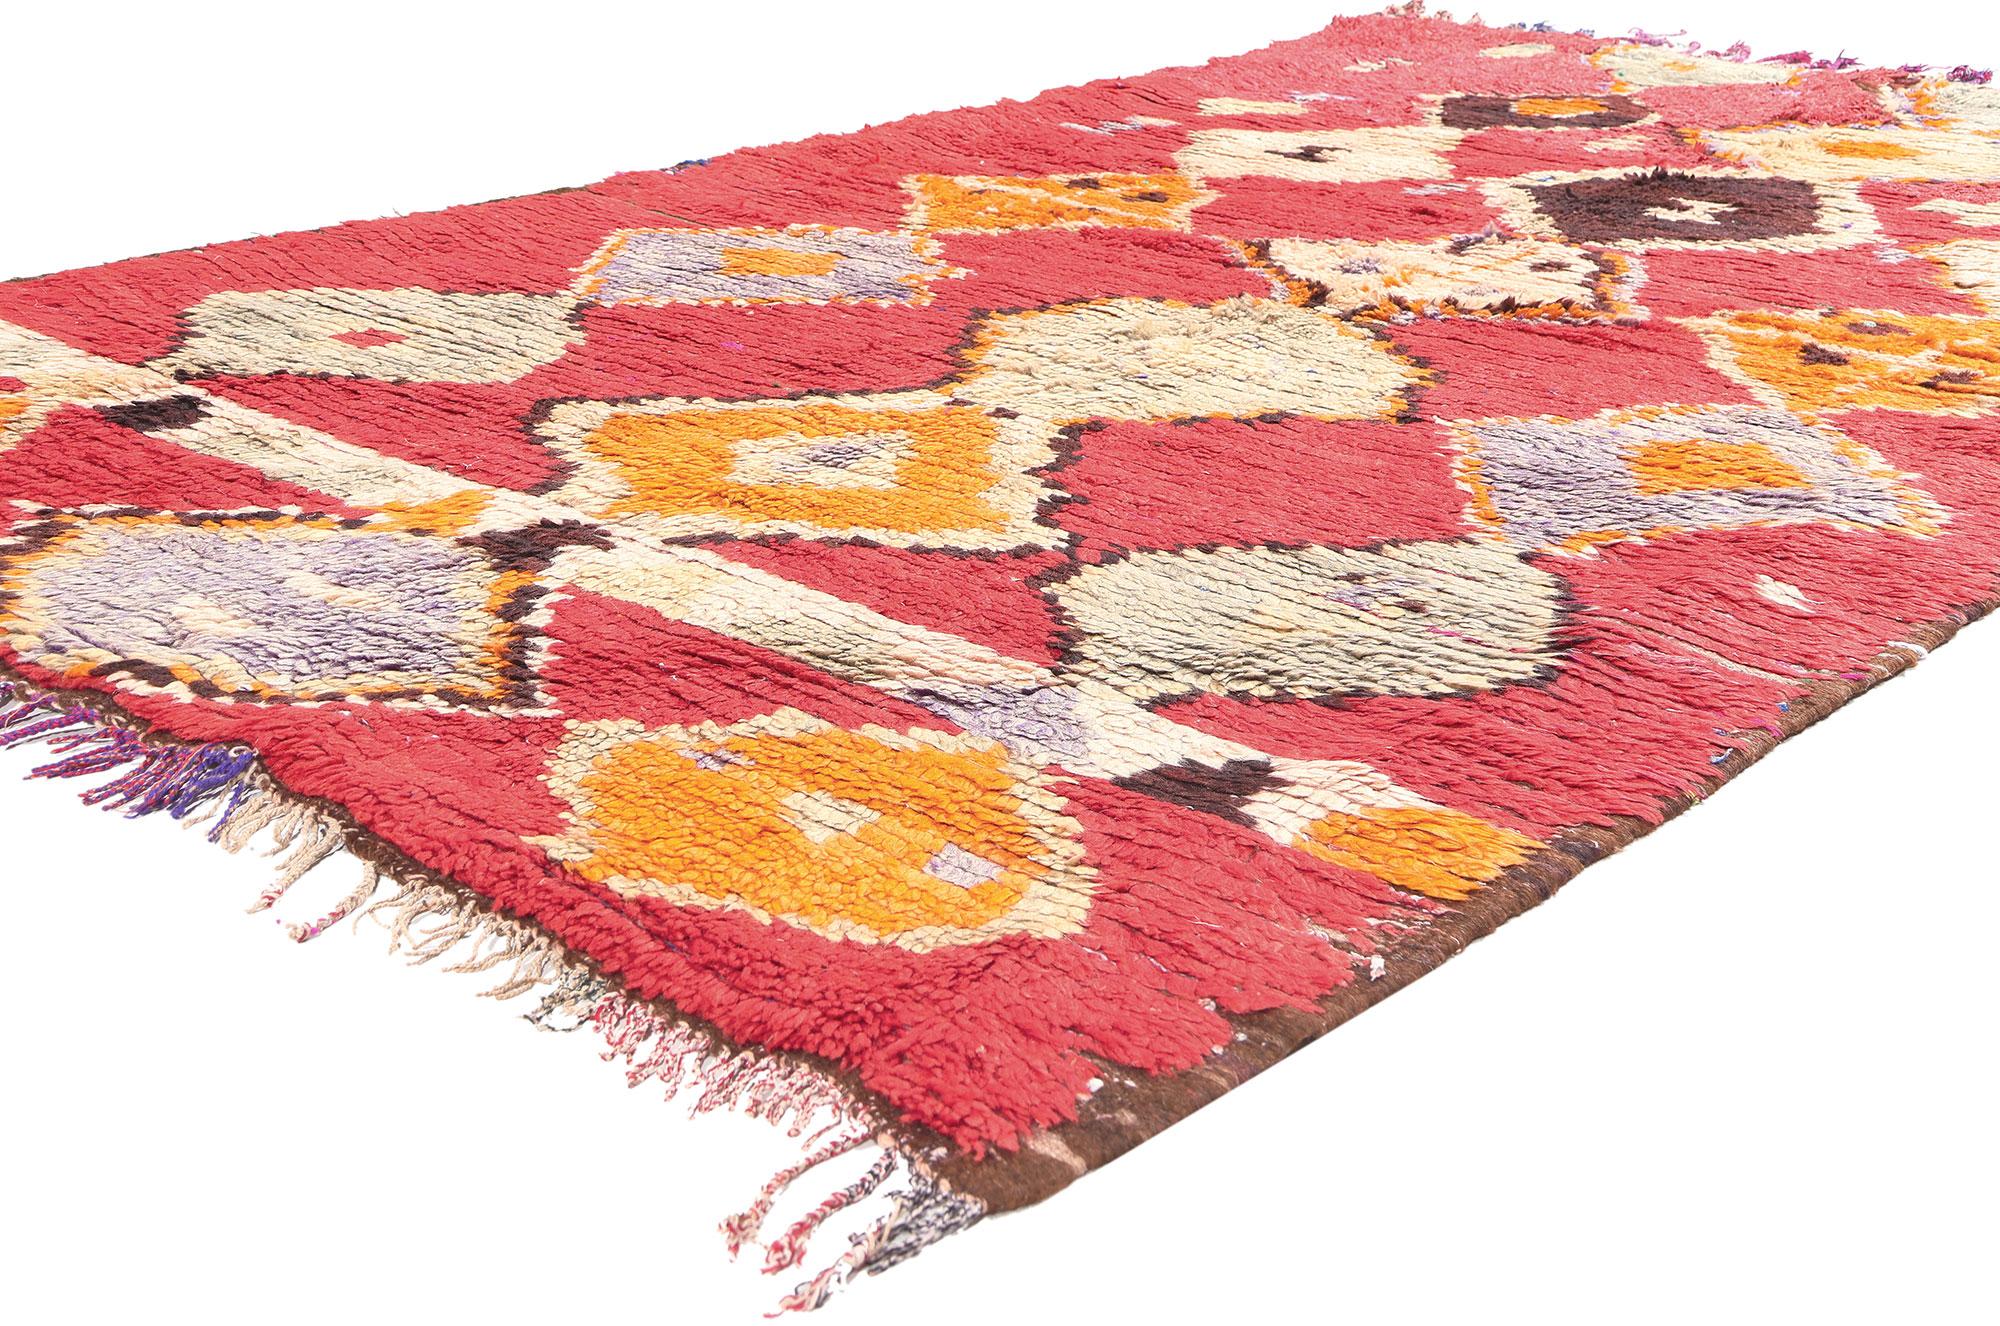 20386 Vintage Rot Boujad Marokkanischer Teppich, 04'09 x 08'03. Zelebrieren Sie den lebendigen Geist der Boujad-Teppiche, die aus der lebhaften Stadt Boujad in der Region Khouribga stammen und für ihre exzentrischen und künstlerischen Designs